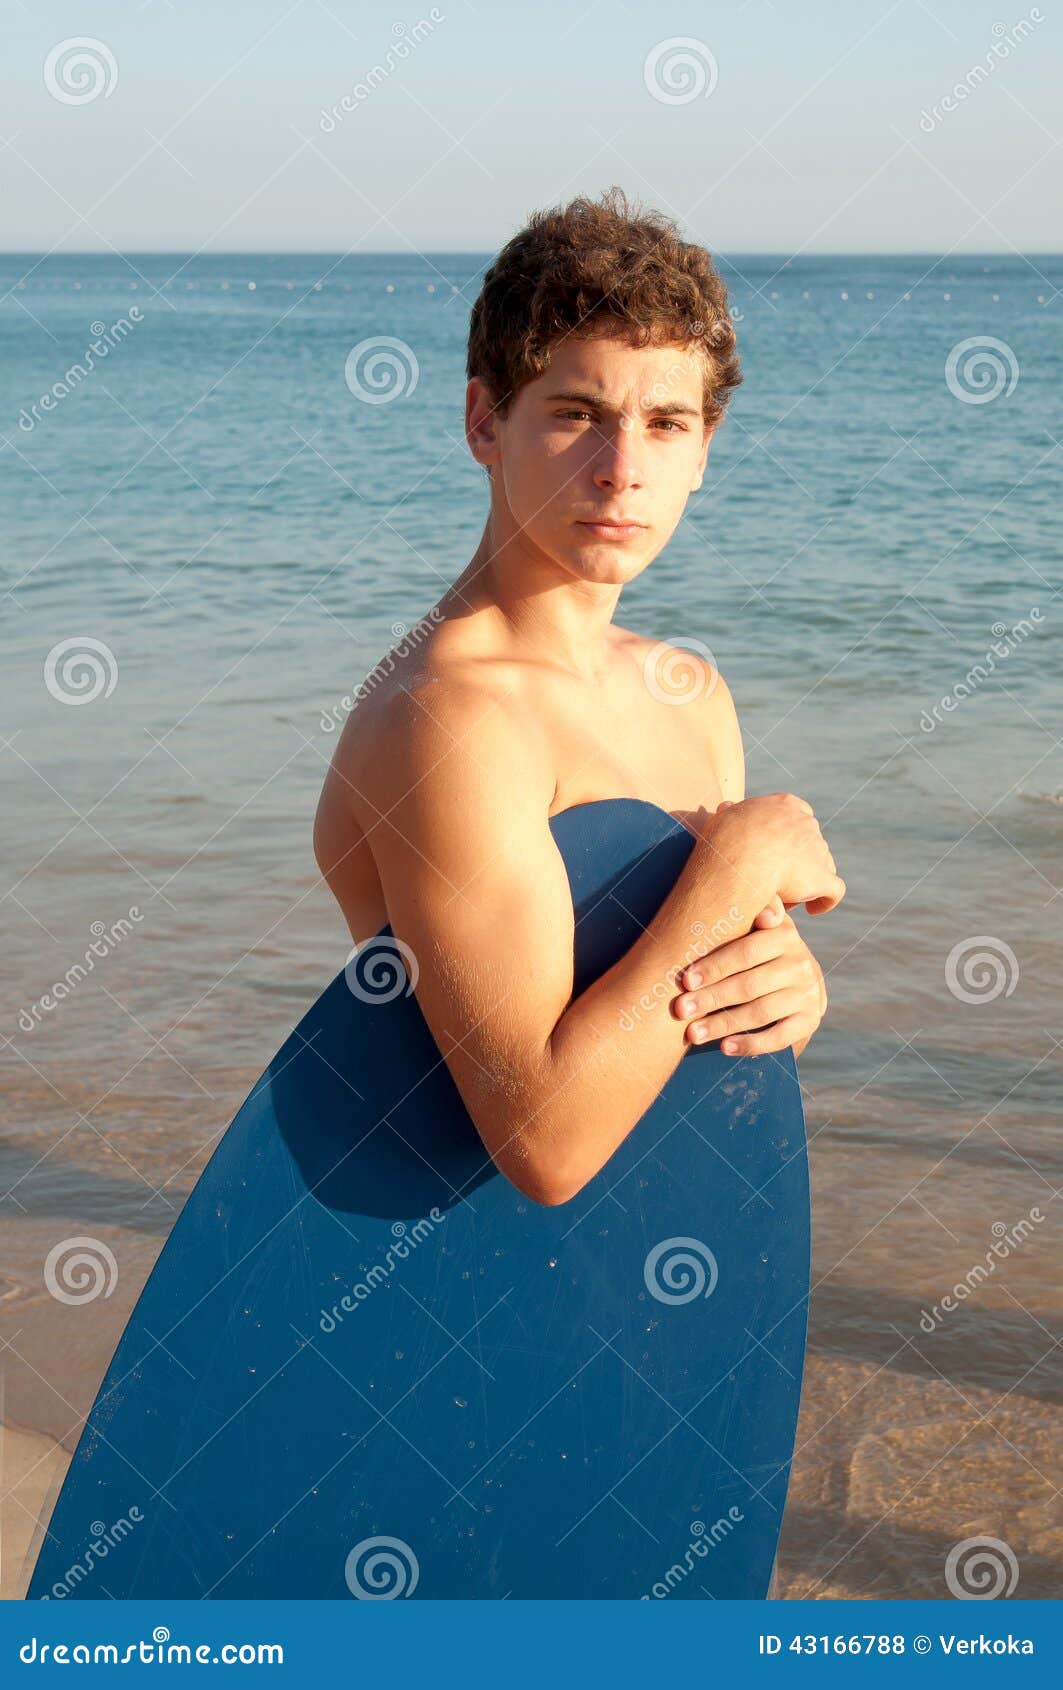 Teenage boy stock photo. Image of background, pastime - 43166788